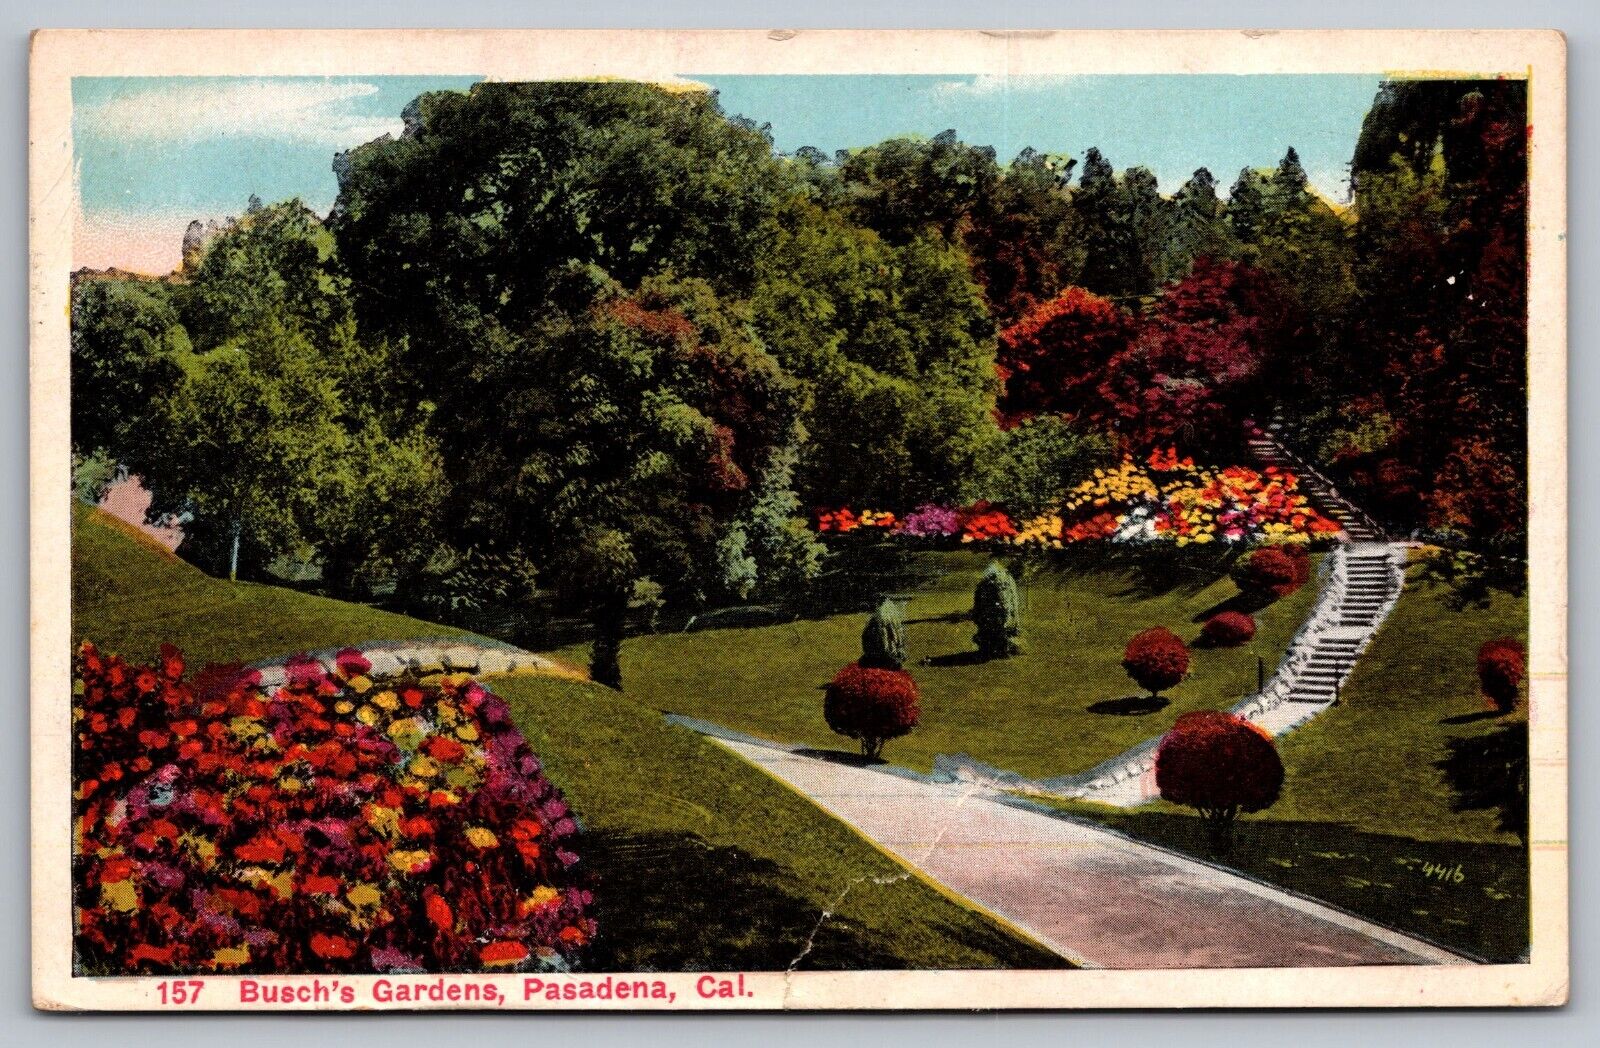 Busch's Gardens (157) Pasadena California — Antique Postcard c. 1915